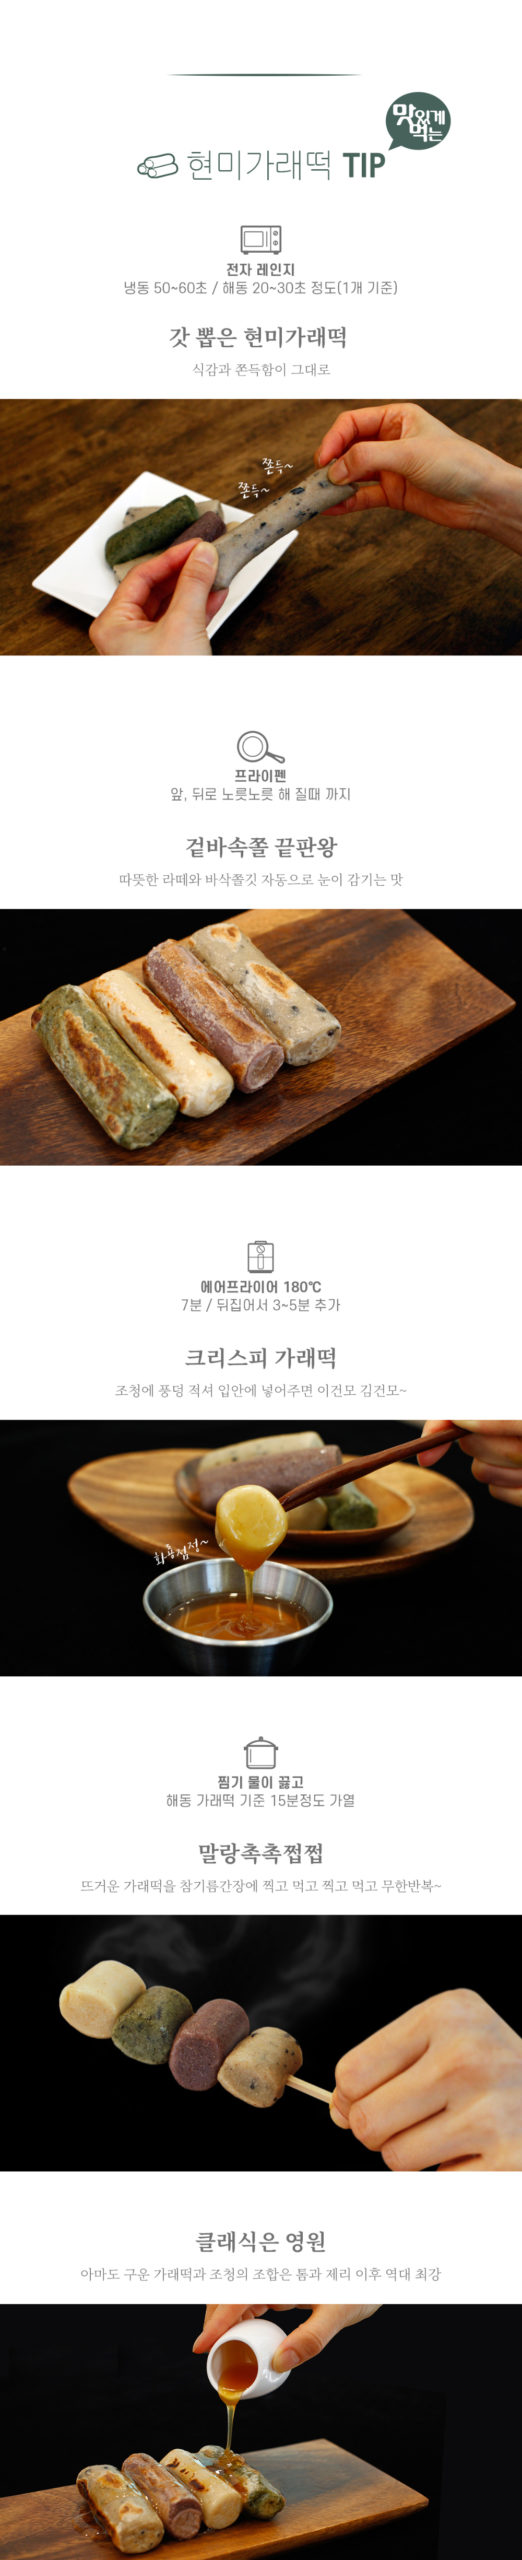 韓國食品-(유통기한 2024/6/28 까지) [마음이가] 서리태현미 가래떡 500g